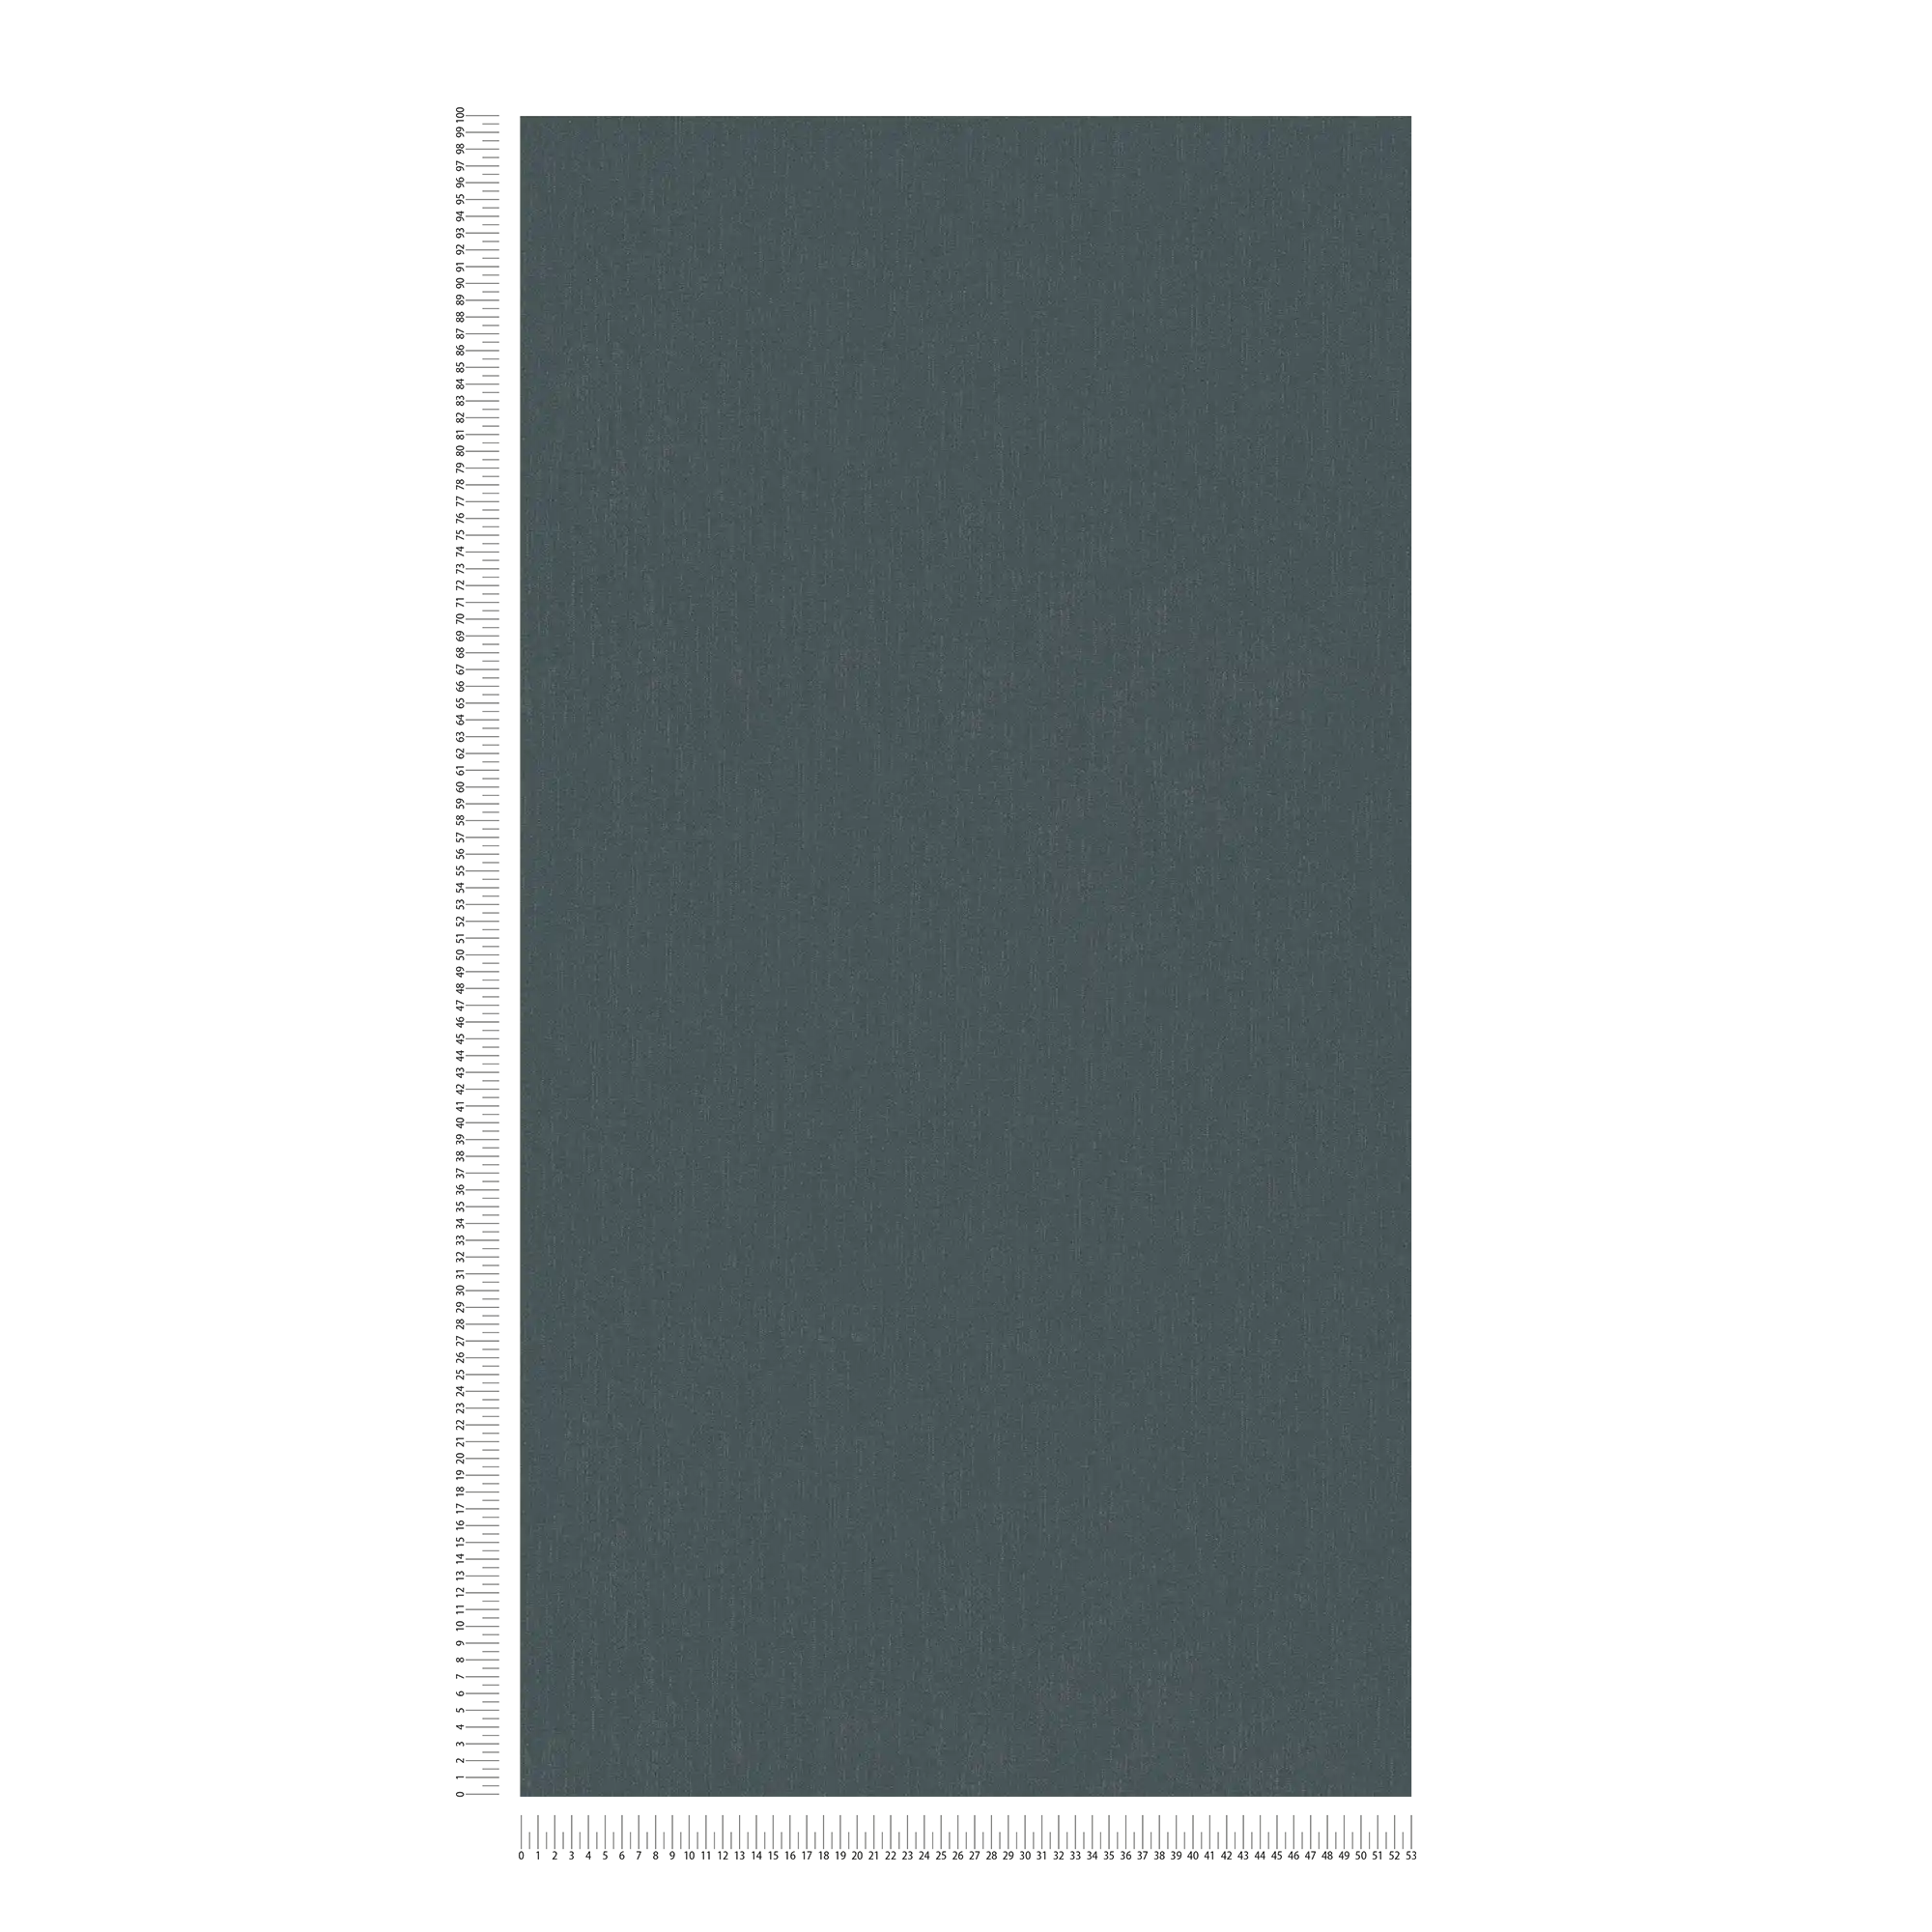             papel pintado gris antracita con efecto de brillo plateado - negro, gris
        